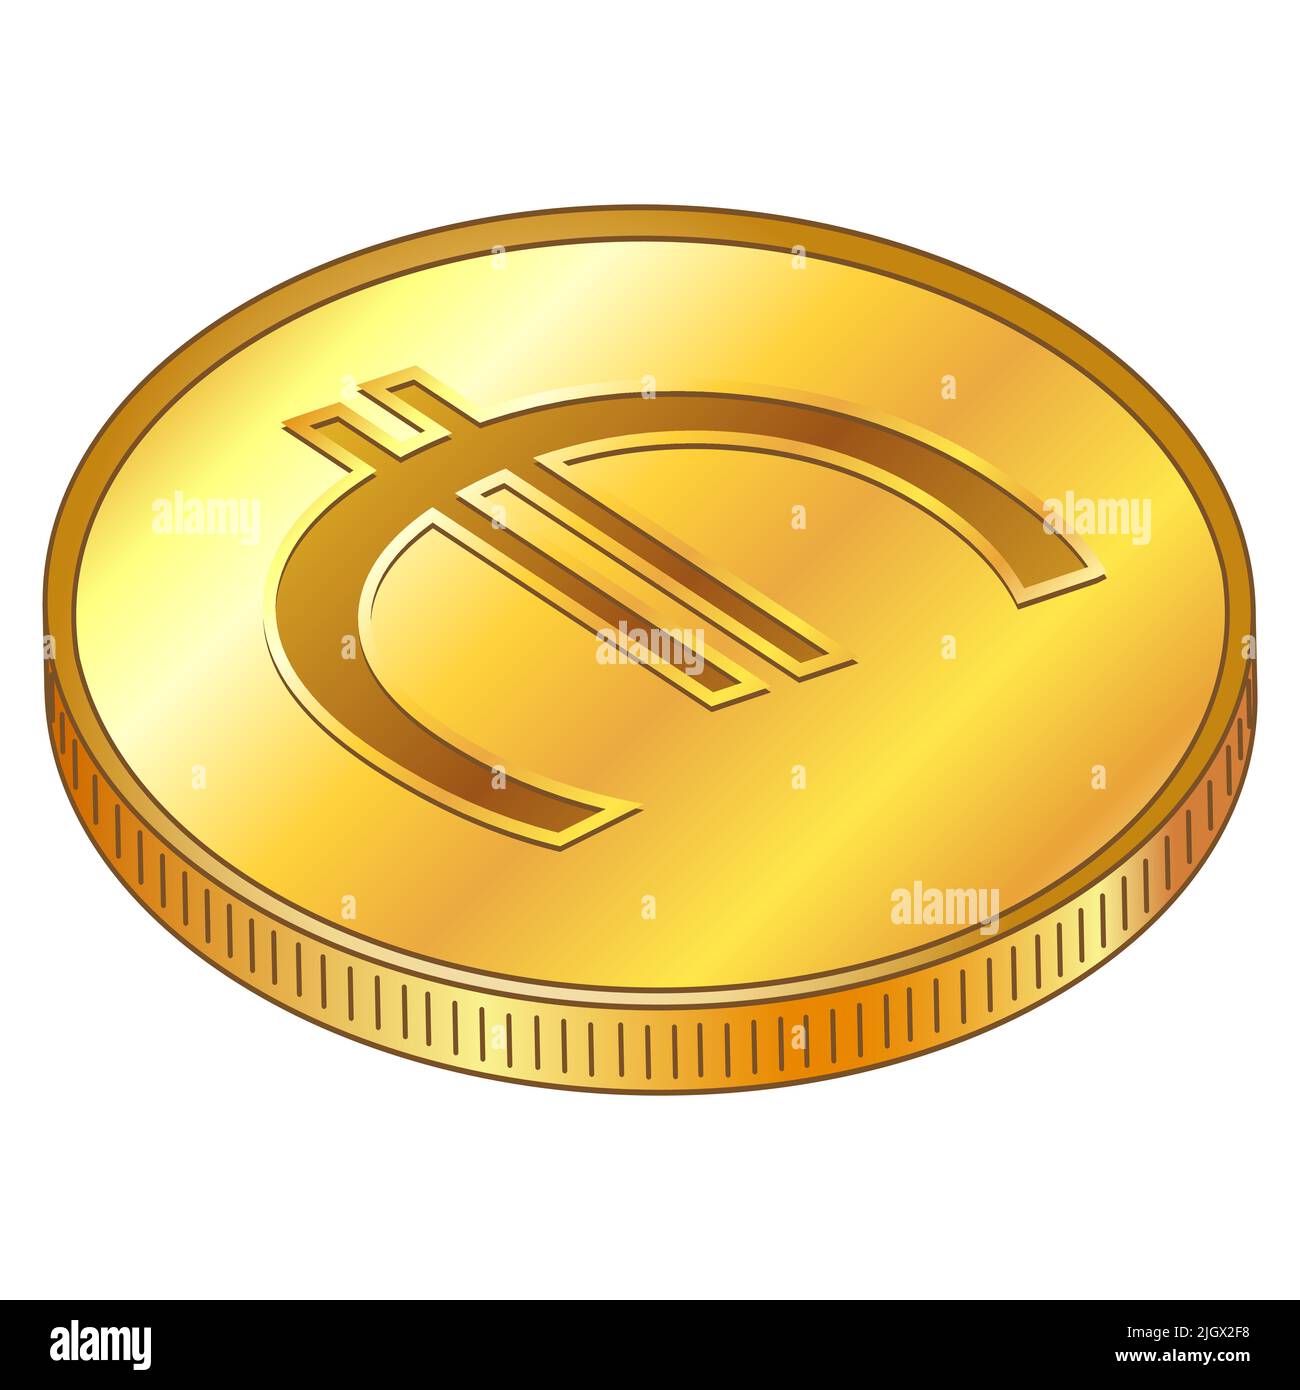 Moneta d'oro con simbolo di valuta dell'Unione europea in vista dall'alto isometrica isolata su sfondo bianco. Introduzione della moneta digitale da parte dell'Europa Illustrazione Vettoriale